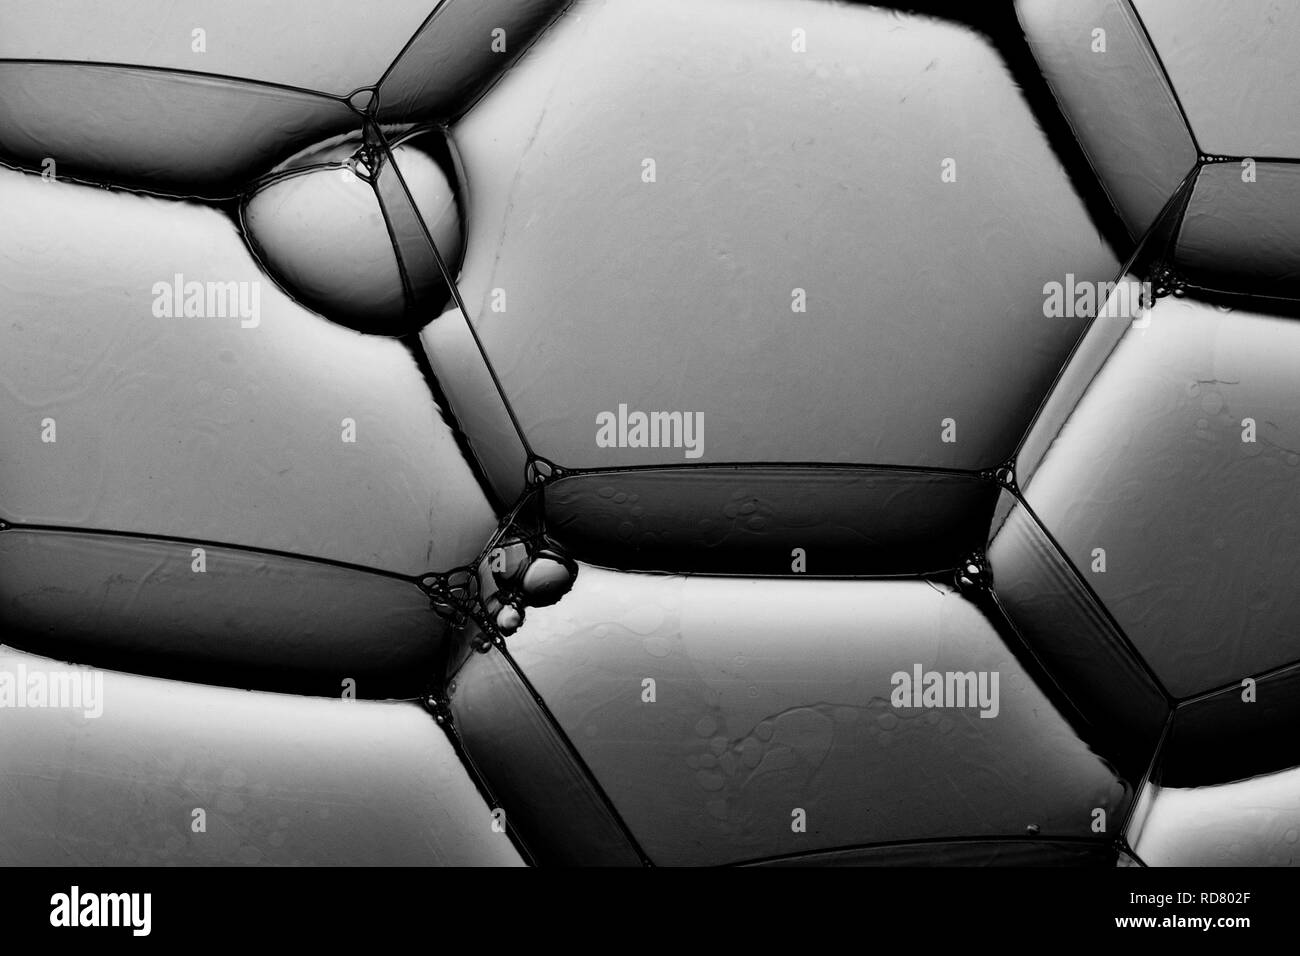 Cerca de burbujas hexagonales en gris, Foto de estudio Foto de stock